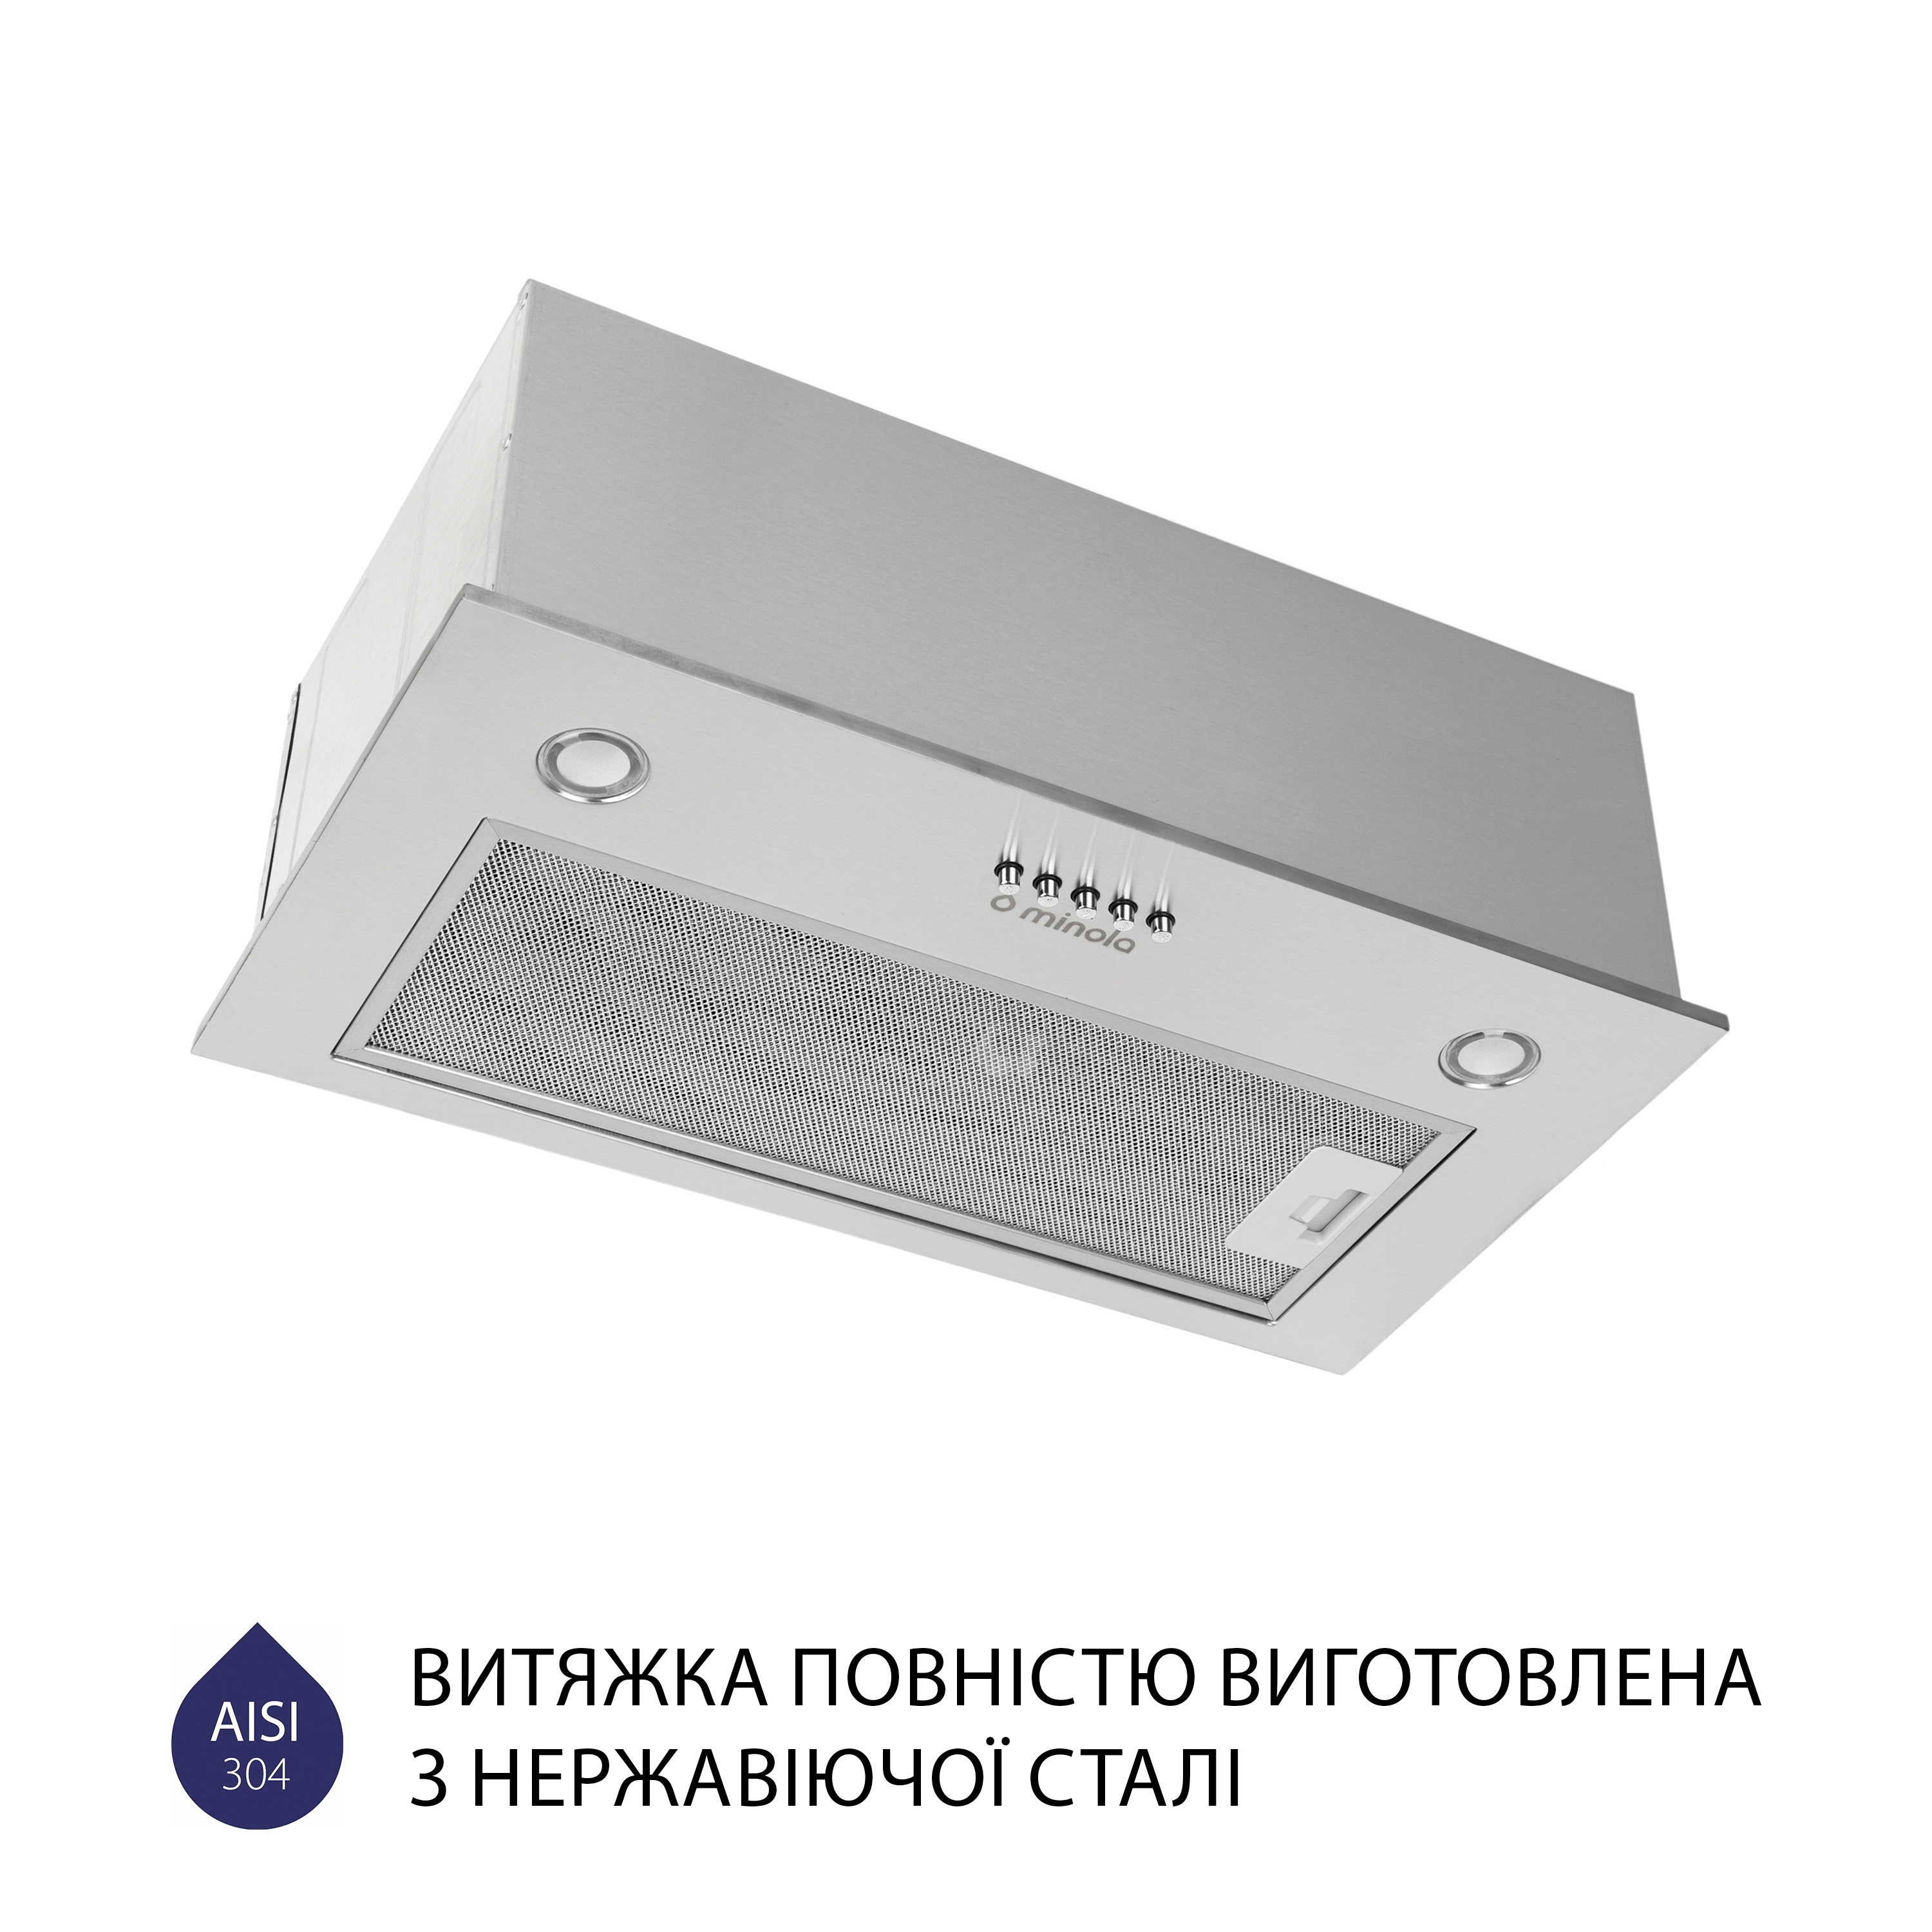 продаємо Minola HBI 5227 I 700 LED в Україні - фото 4